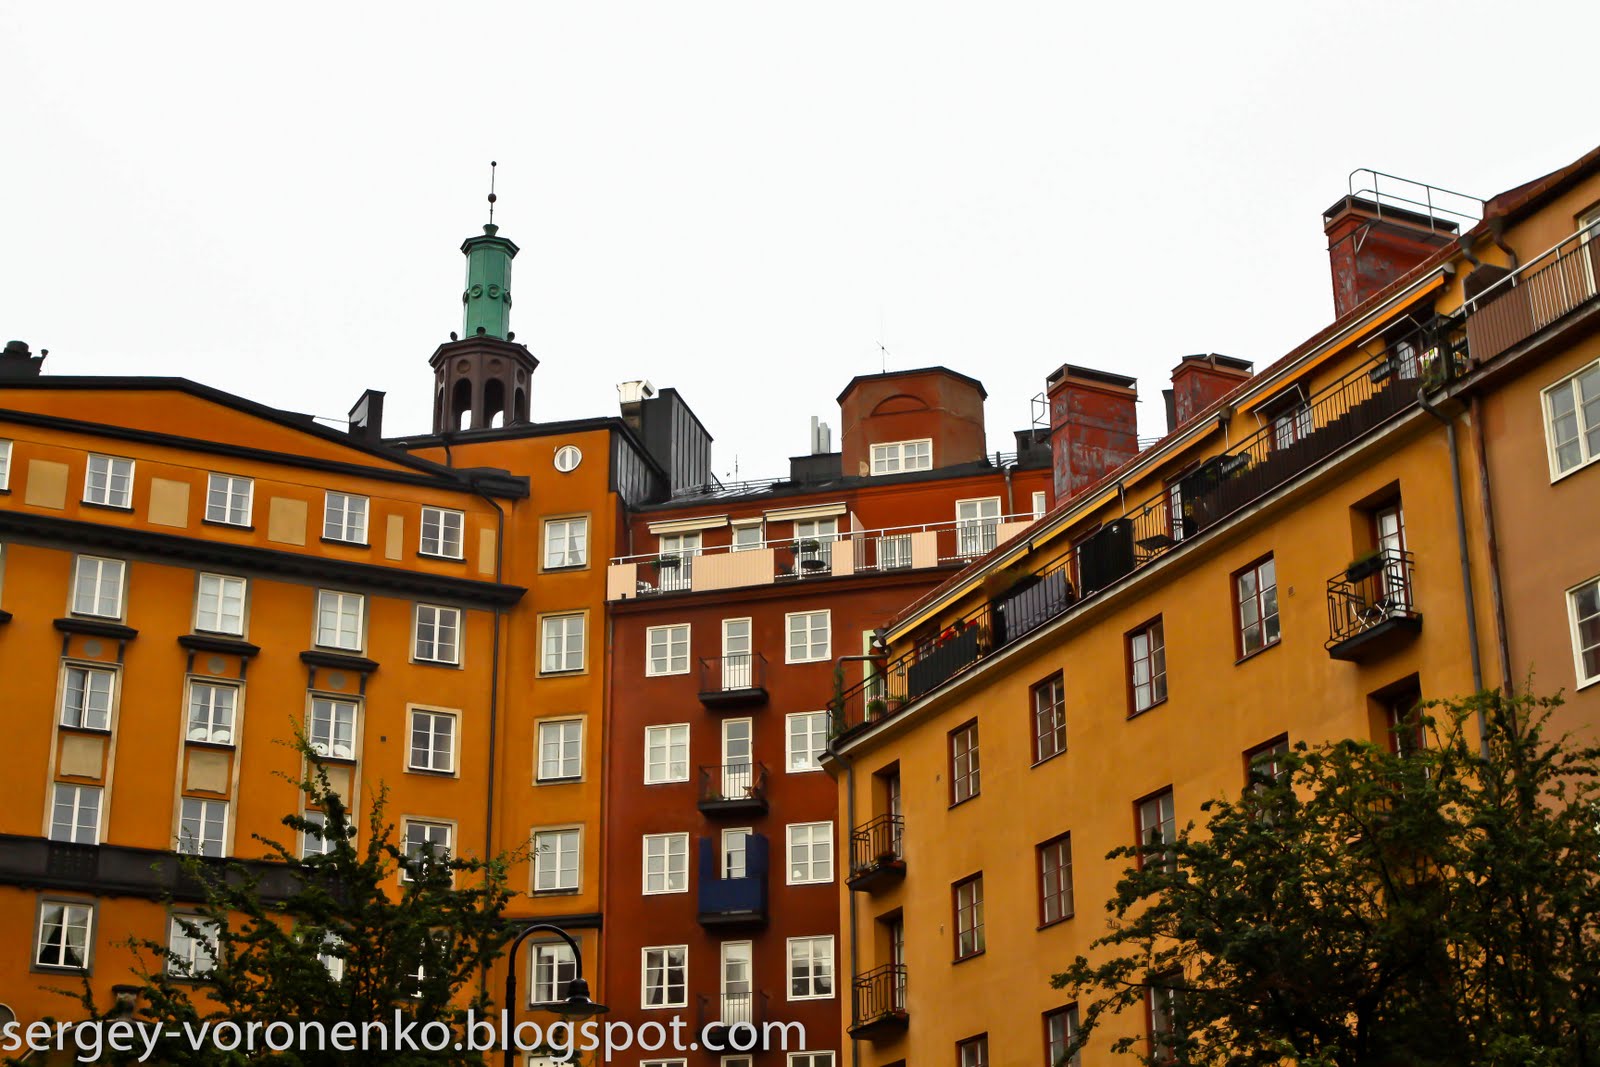 Крыша где жил карлсон. Дом Карлсона в Стокгольме. Домик Карлсона на крыше в Стокгольме. Памятник Карлсону в Стокгольме. Дом Карлсона в Стокгольме фото.